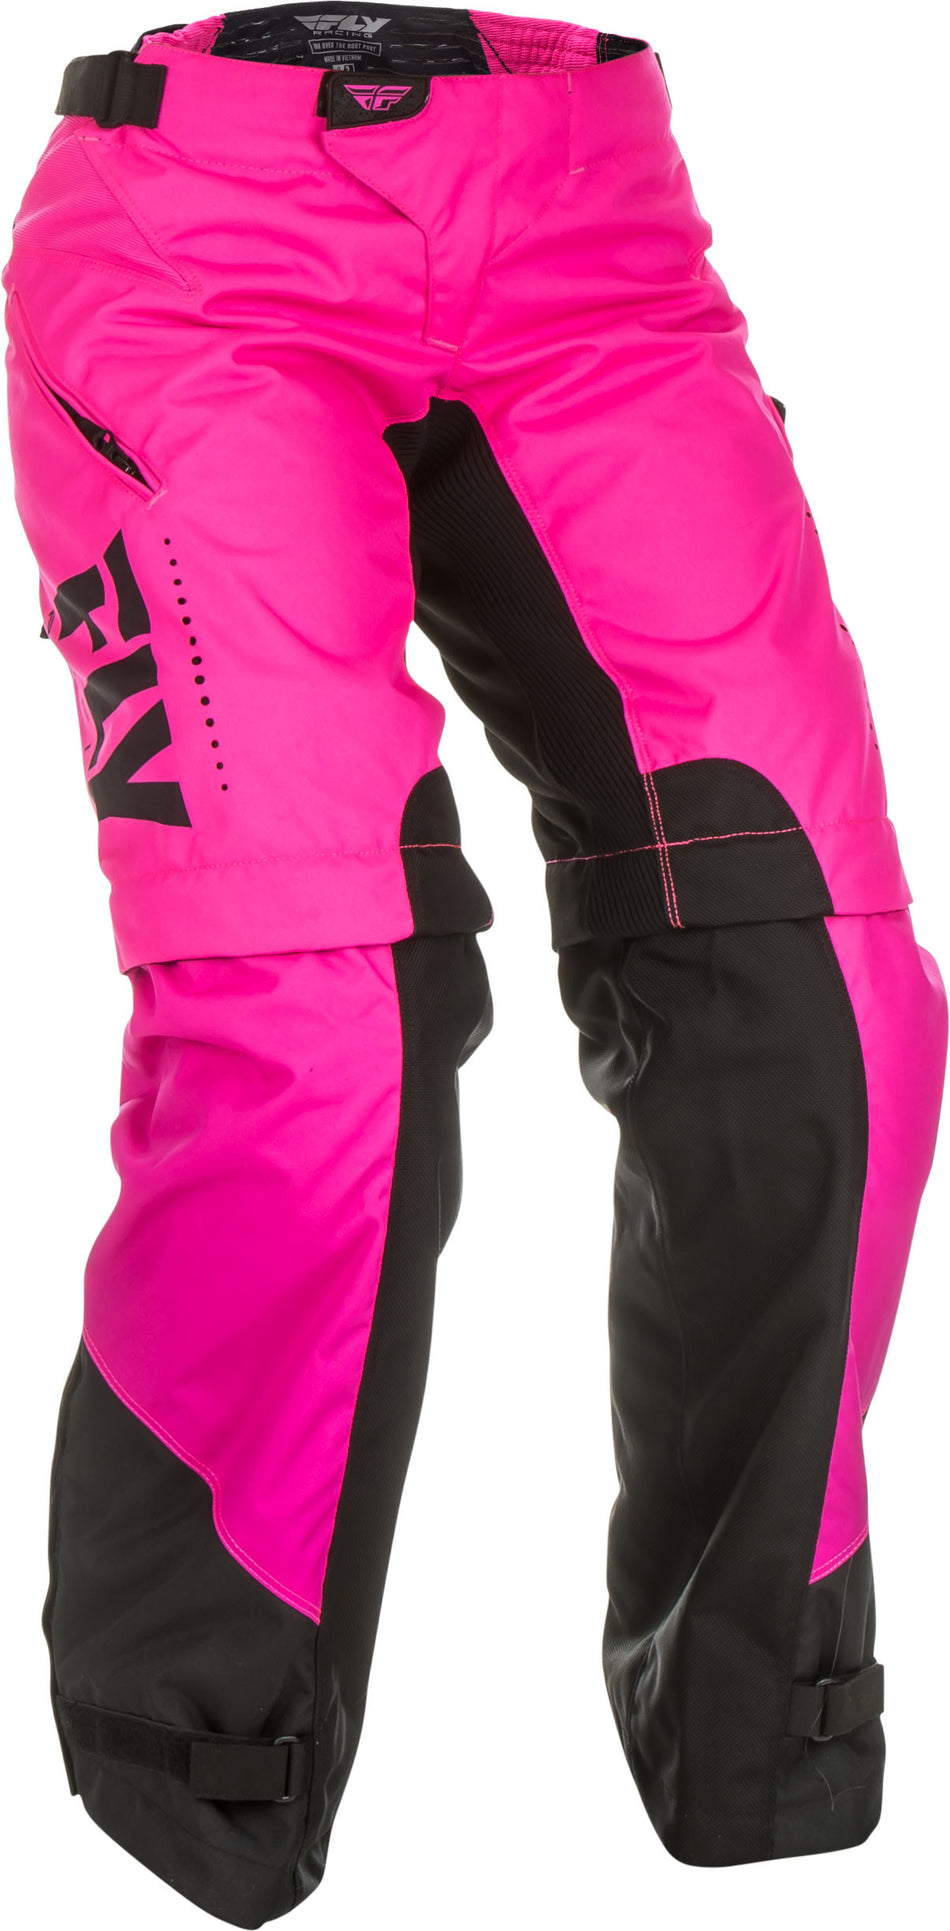 FLY RACING Women's Over Boot Pants Neon Pink/Black Sz 09/10 372-65808